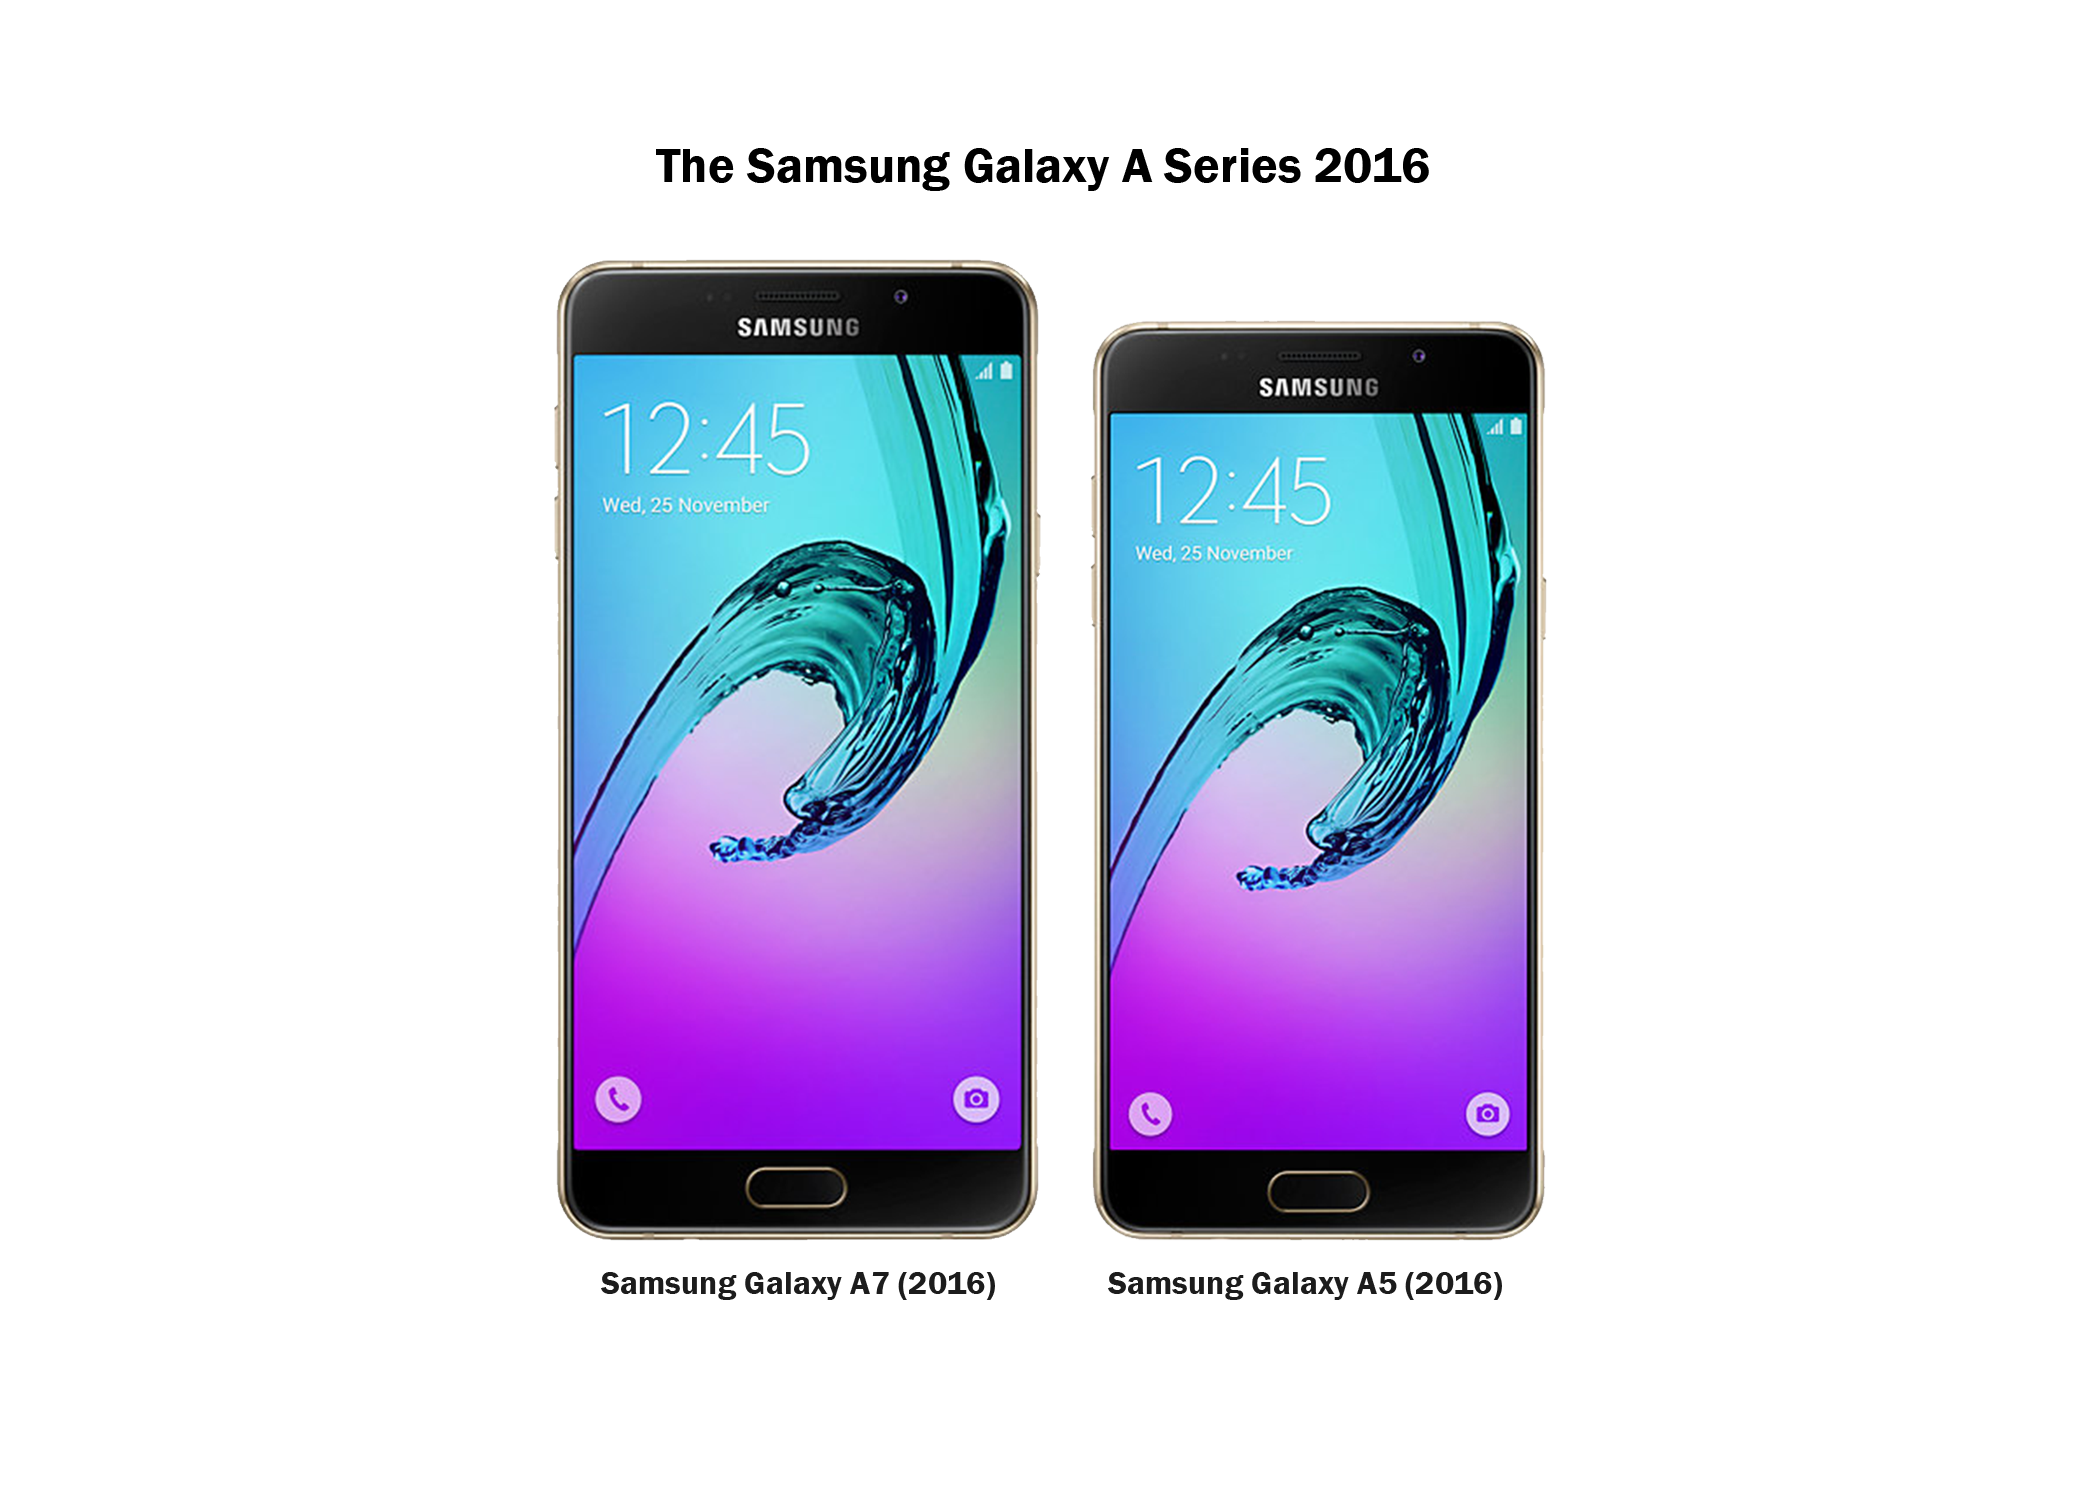 Samsung Galaxy A5, Galaxy A7 2016 Launched